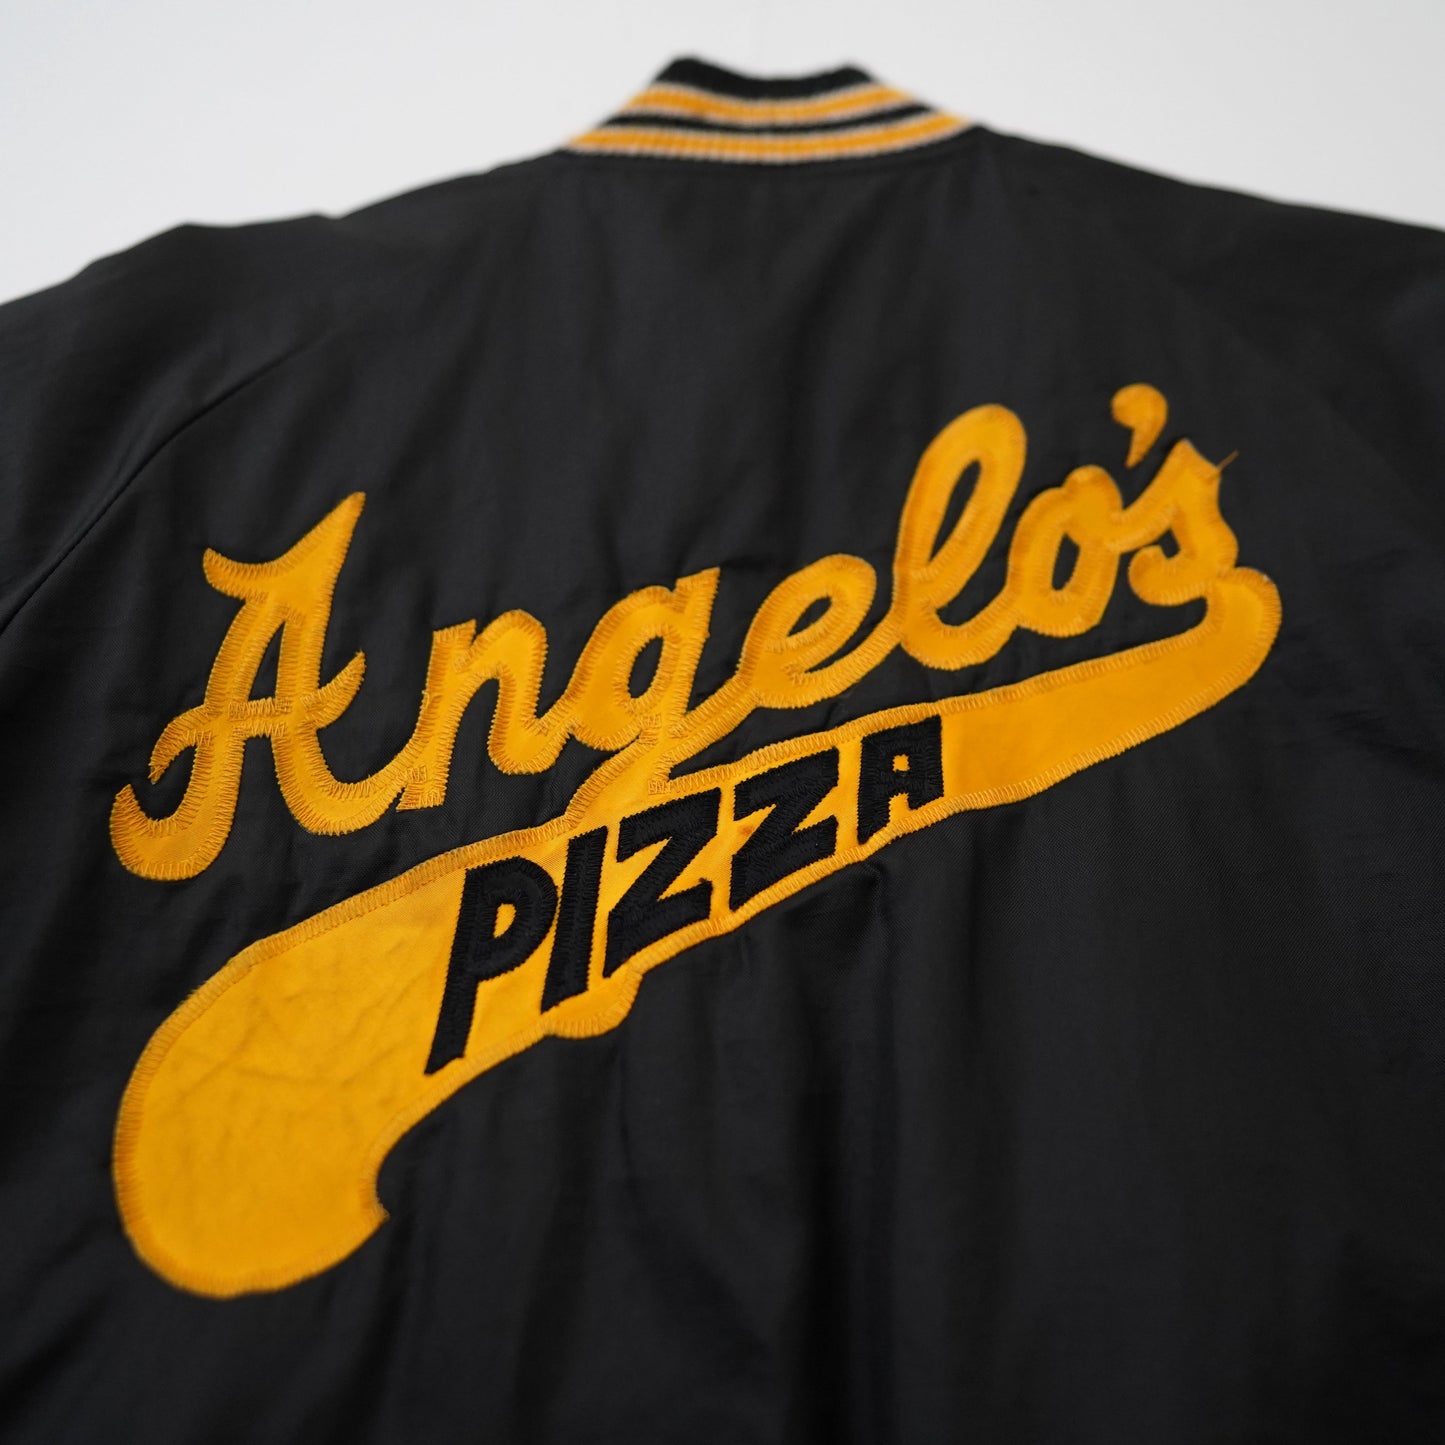 angelo's pizza nylon jacket